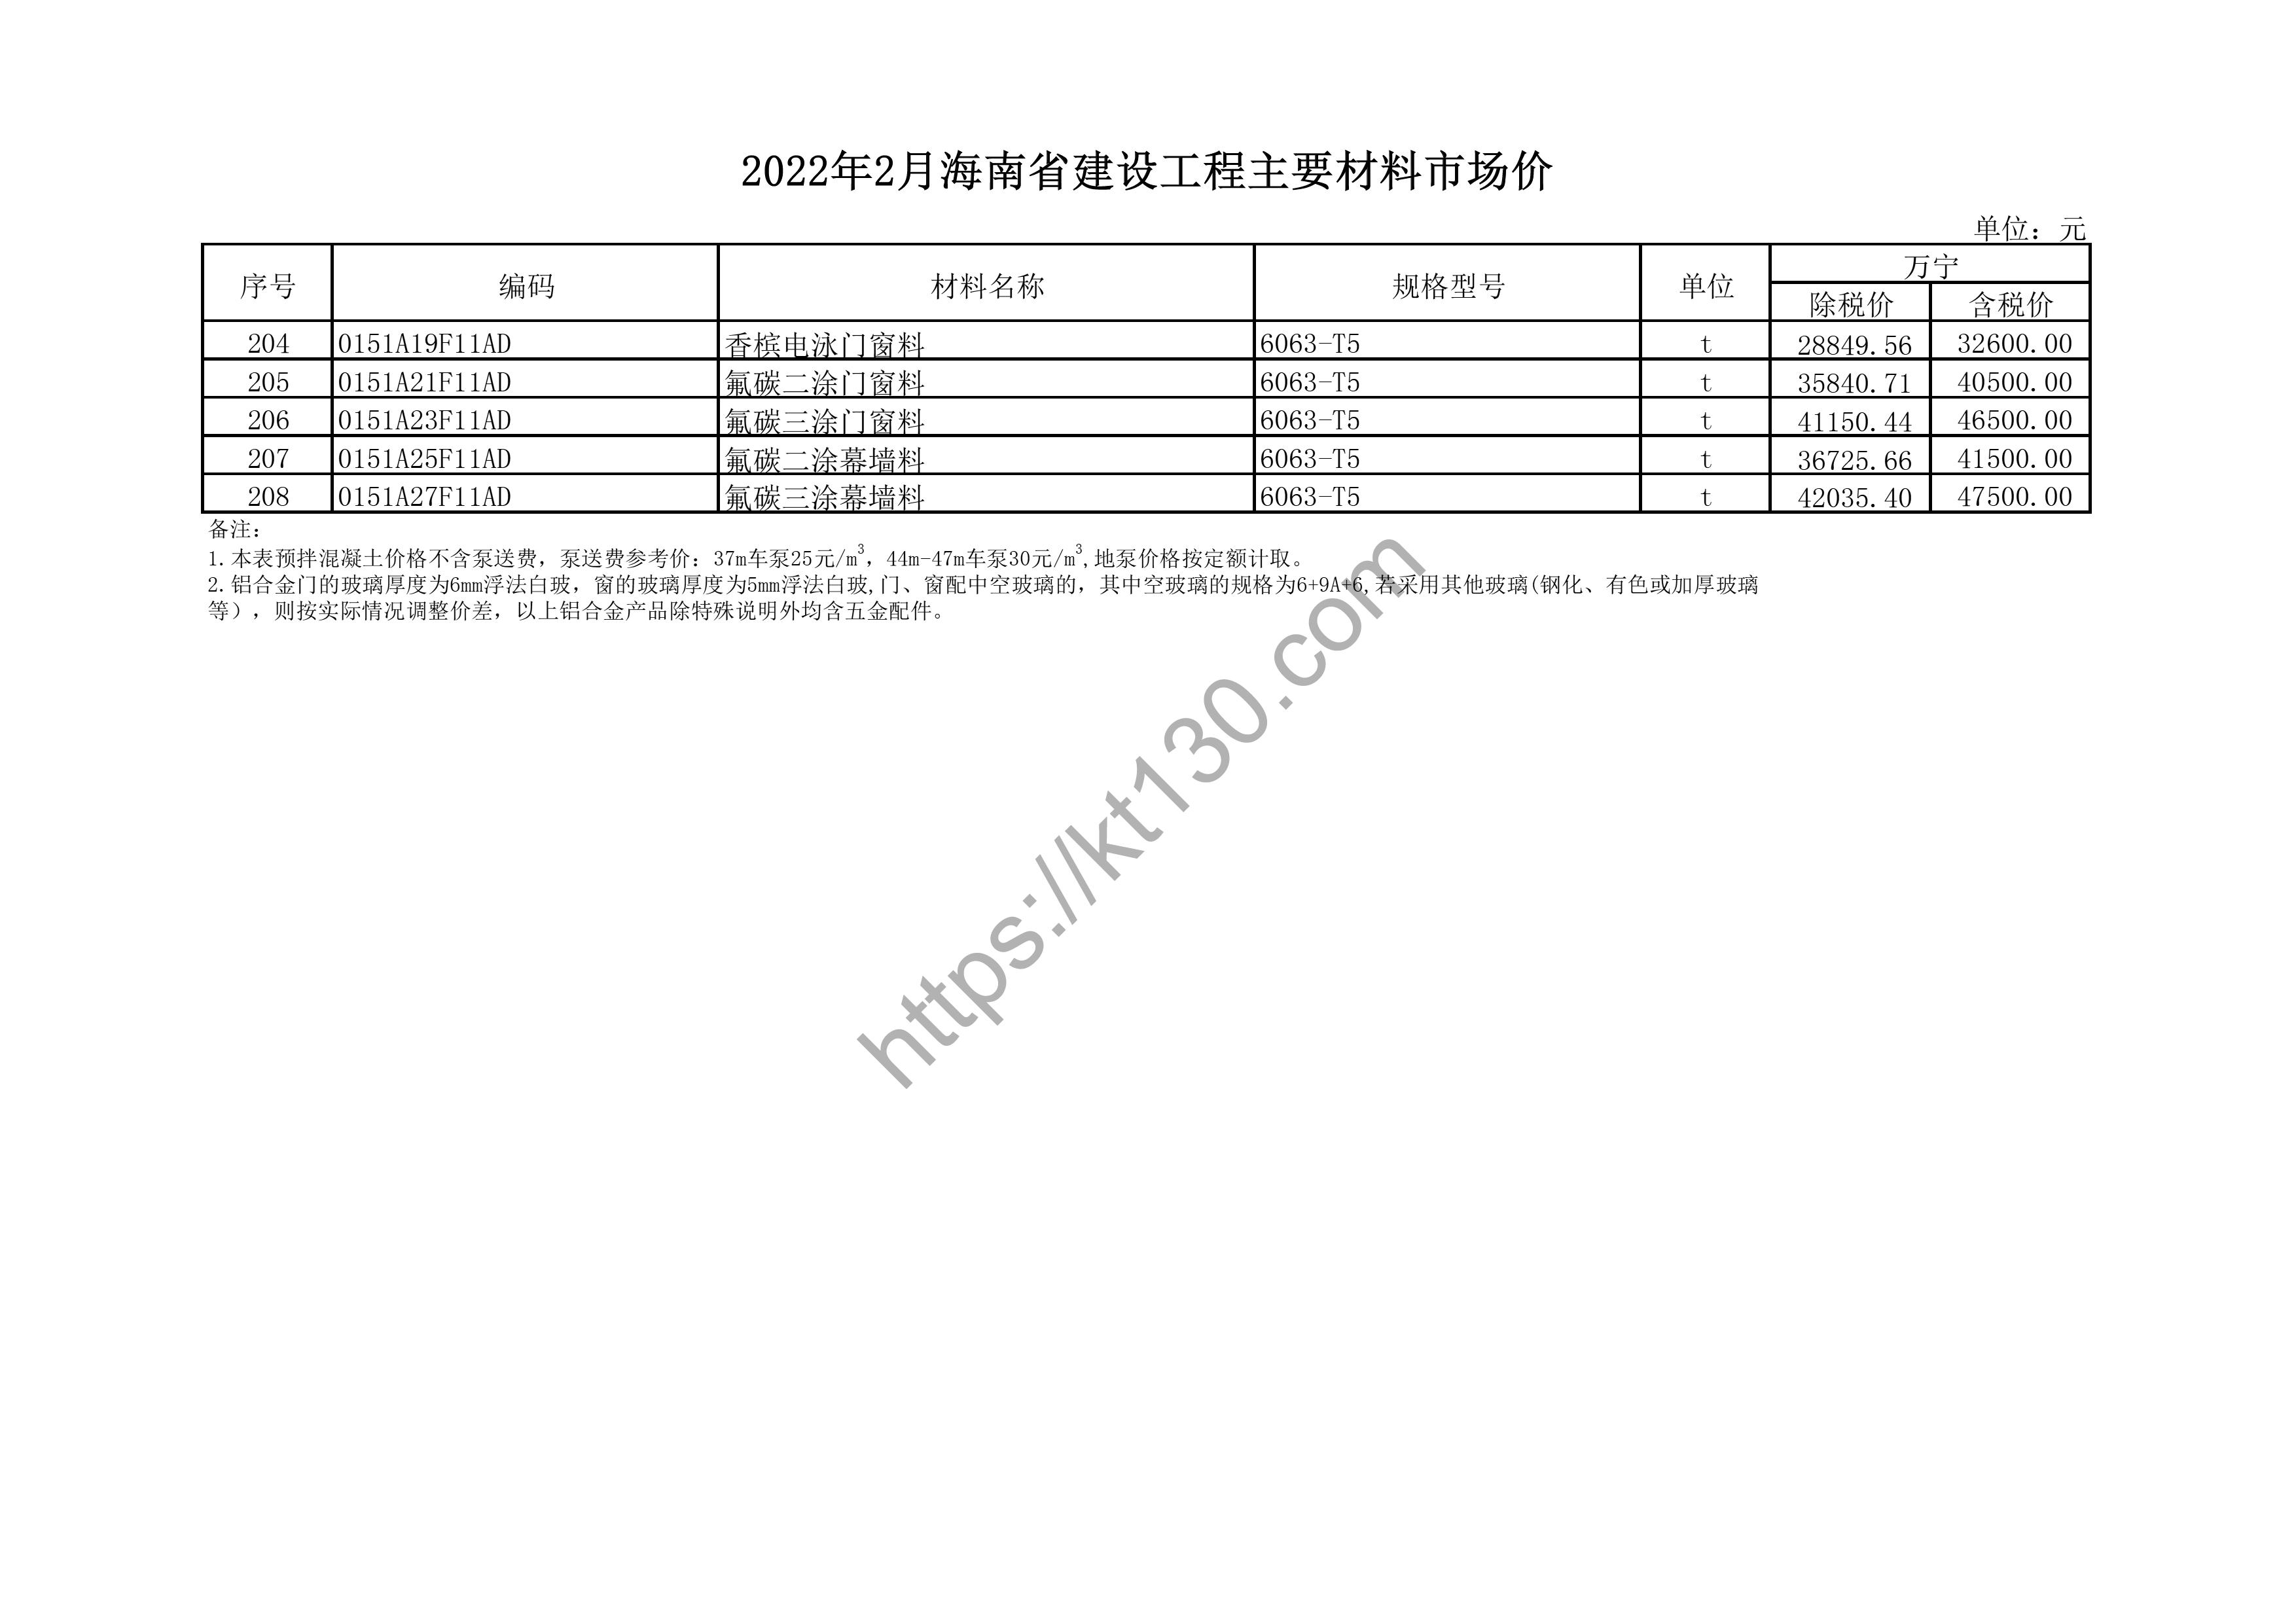 海南省2022年2月建筑材料价_高线_43812